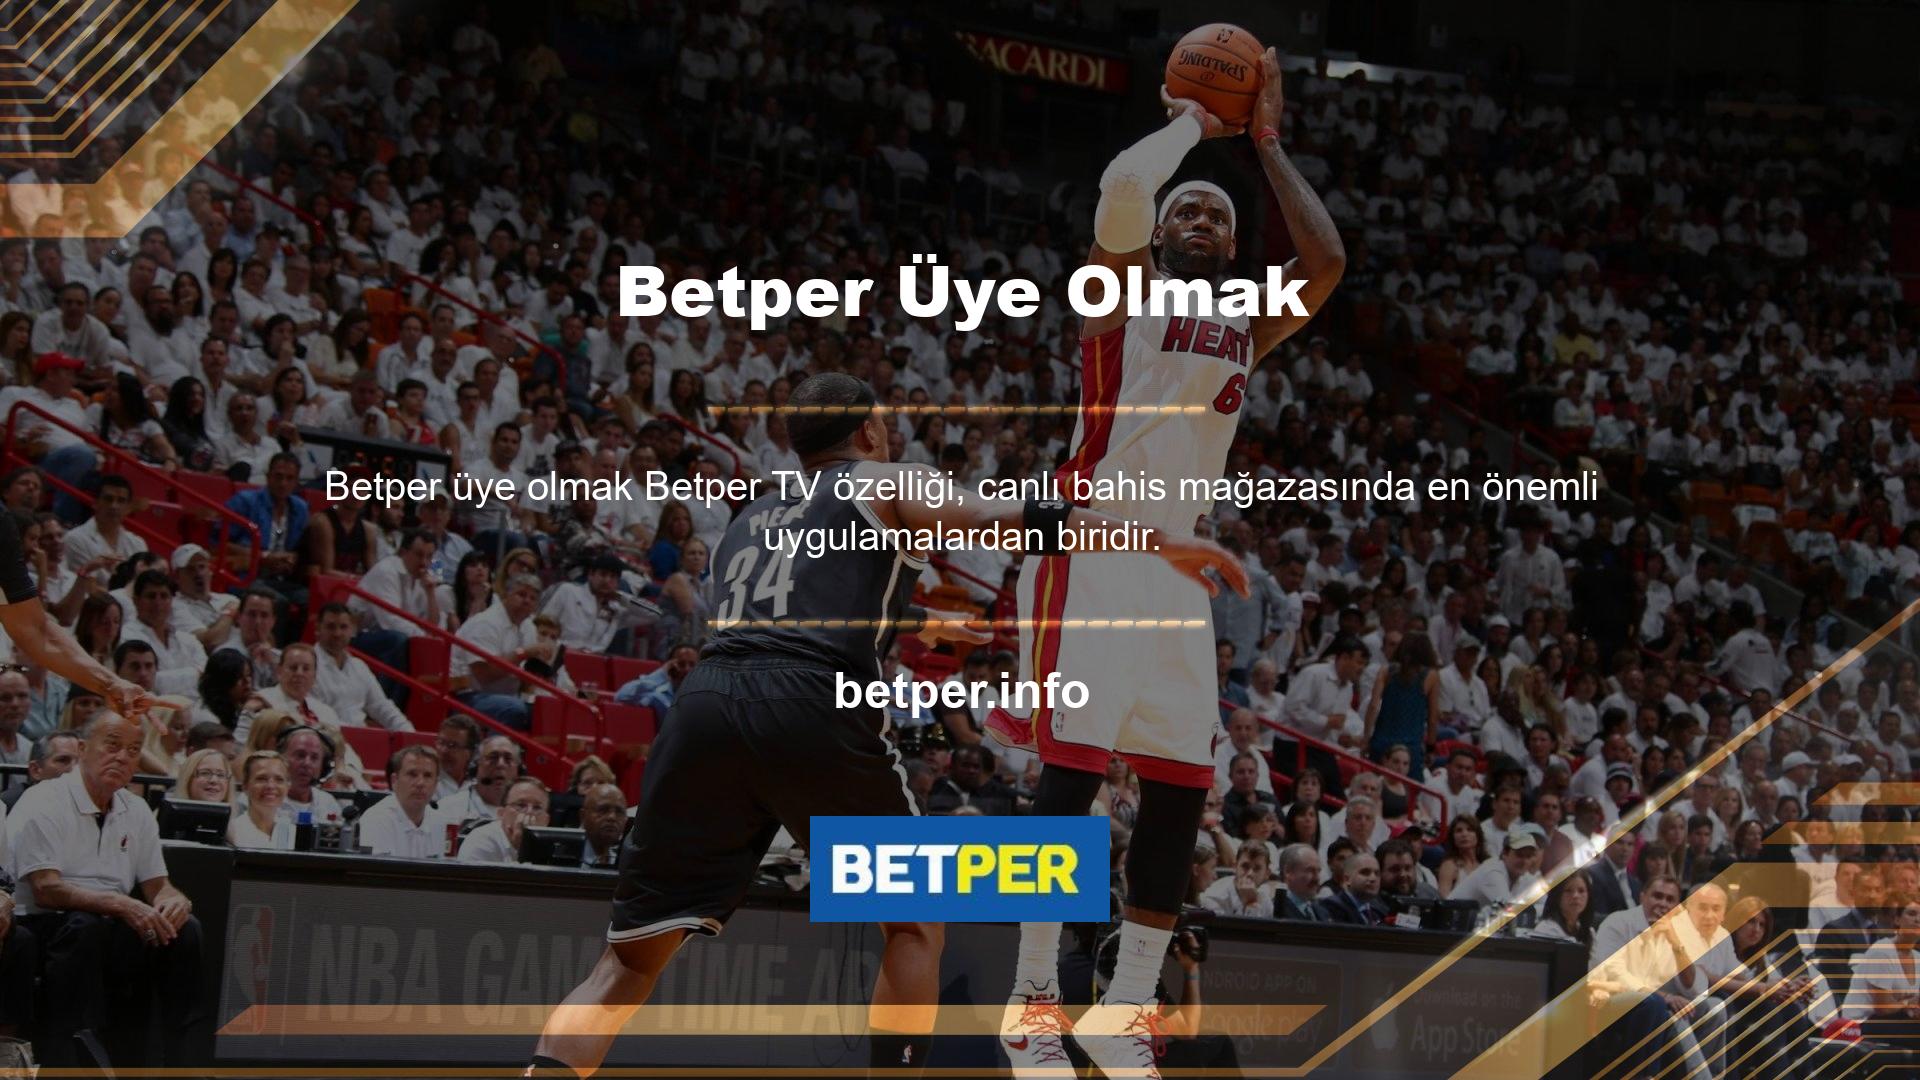 Betper platformu, Avrupa oyun endüstrisindeki en organize oyunculardan biri olarak sektöre hakimdir